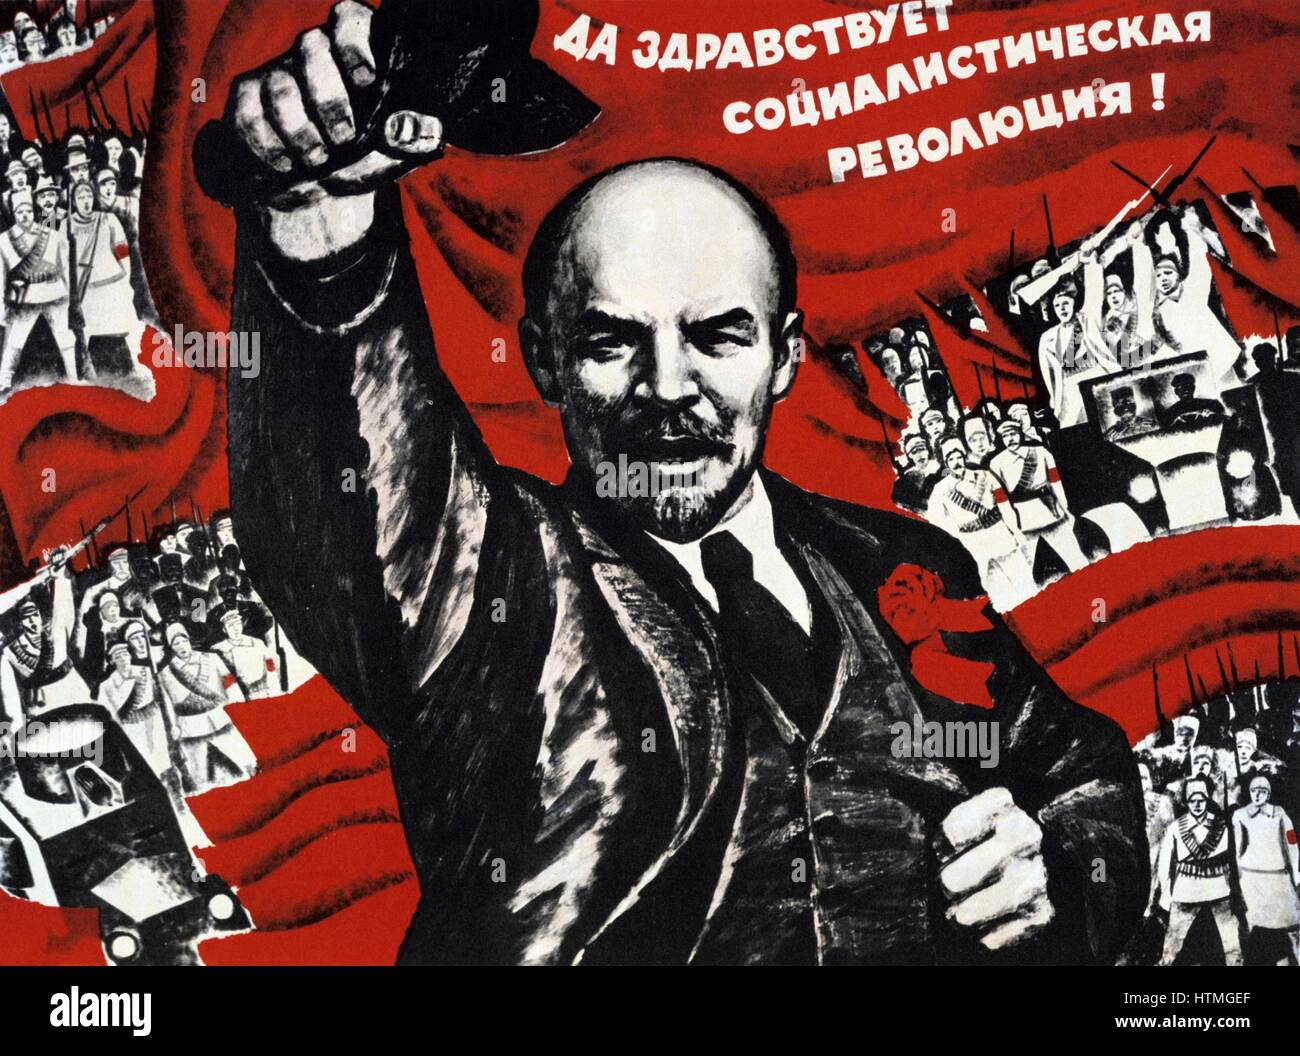 Rivoluzione Russa, ottobre 1917. Vladimir Ilyich Lenin (Ulyanov - 1870-1924) rivoluzionario russo. Non datata manifesto comunista. Foto Stock